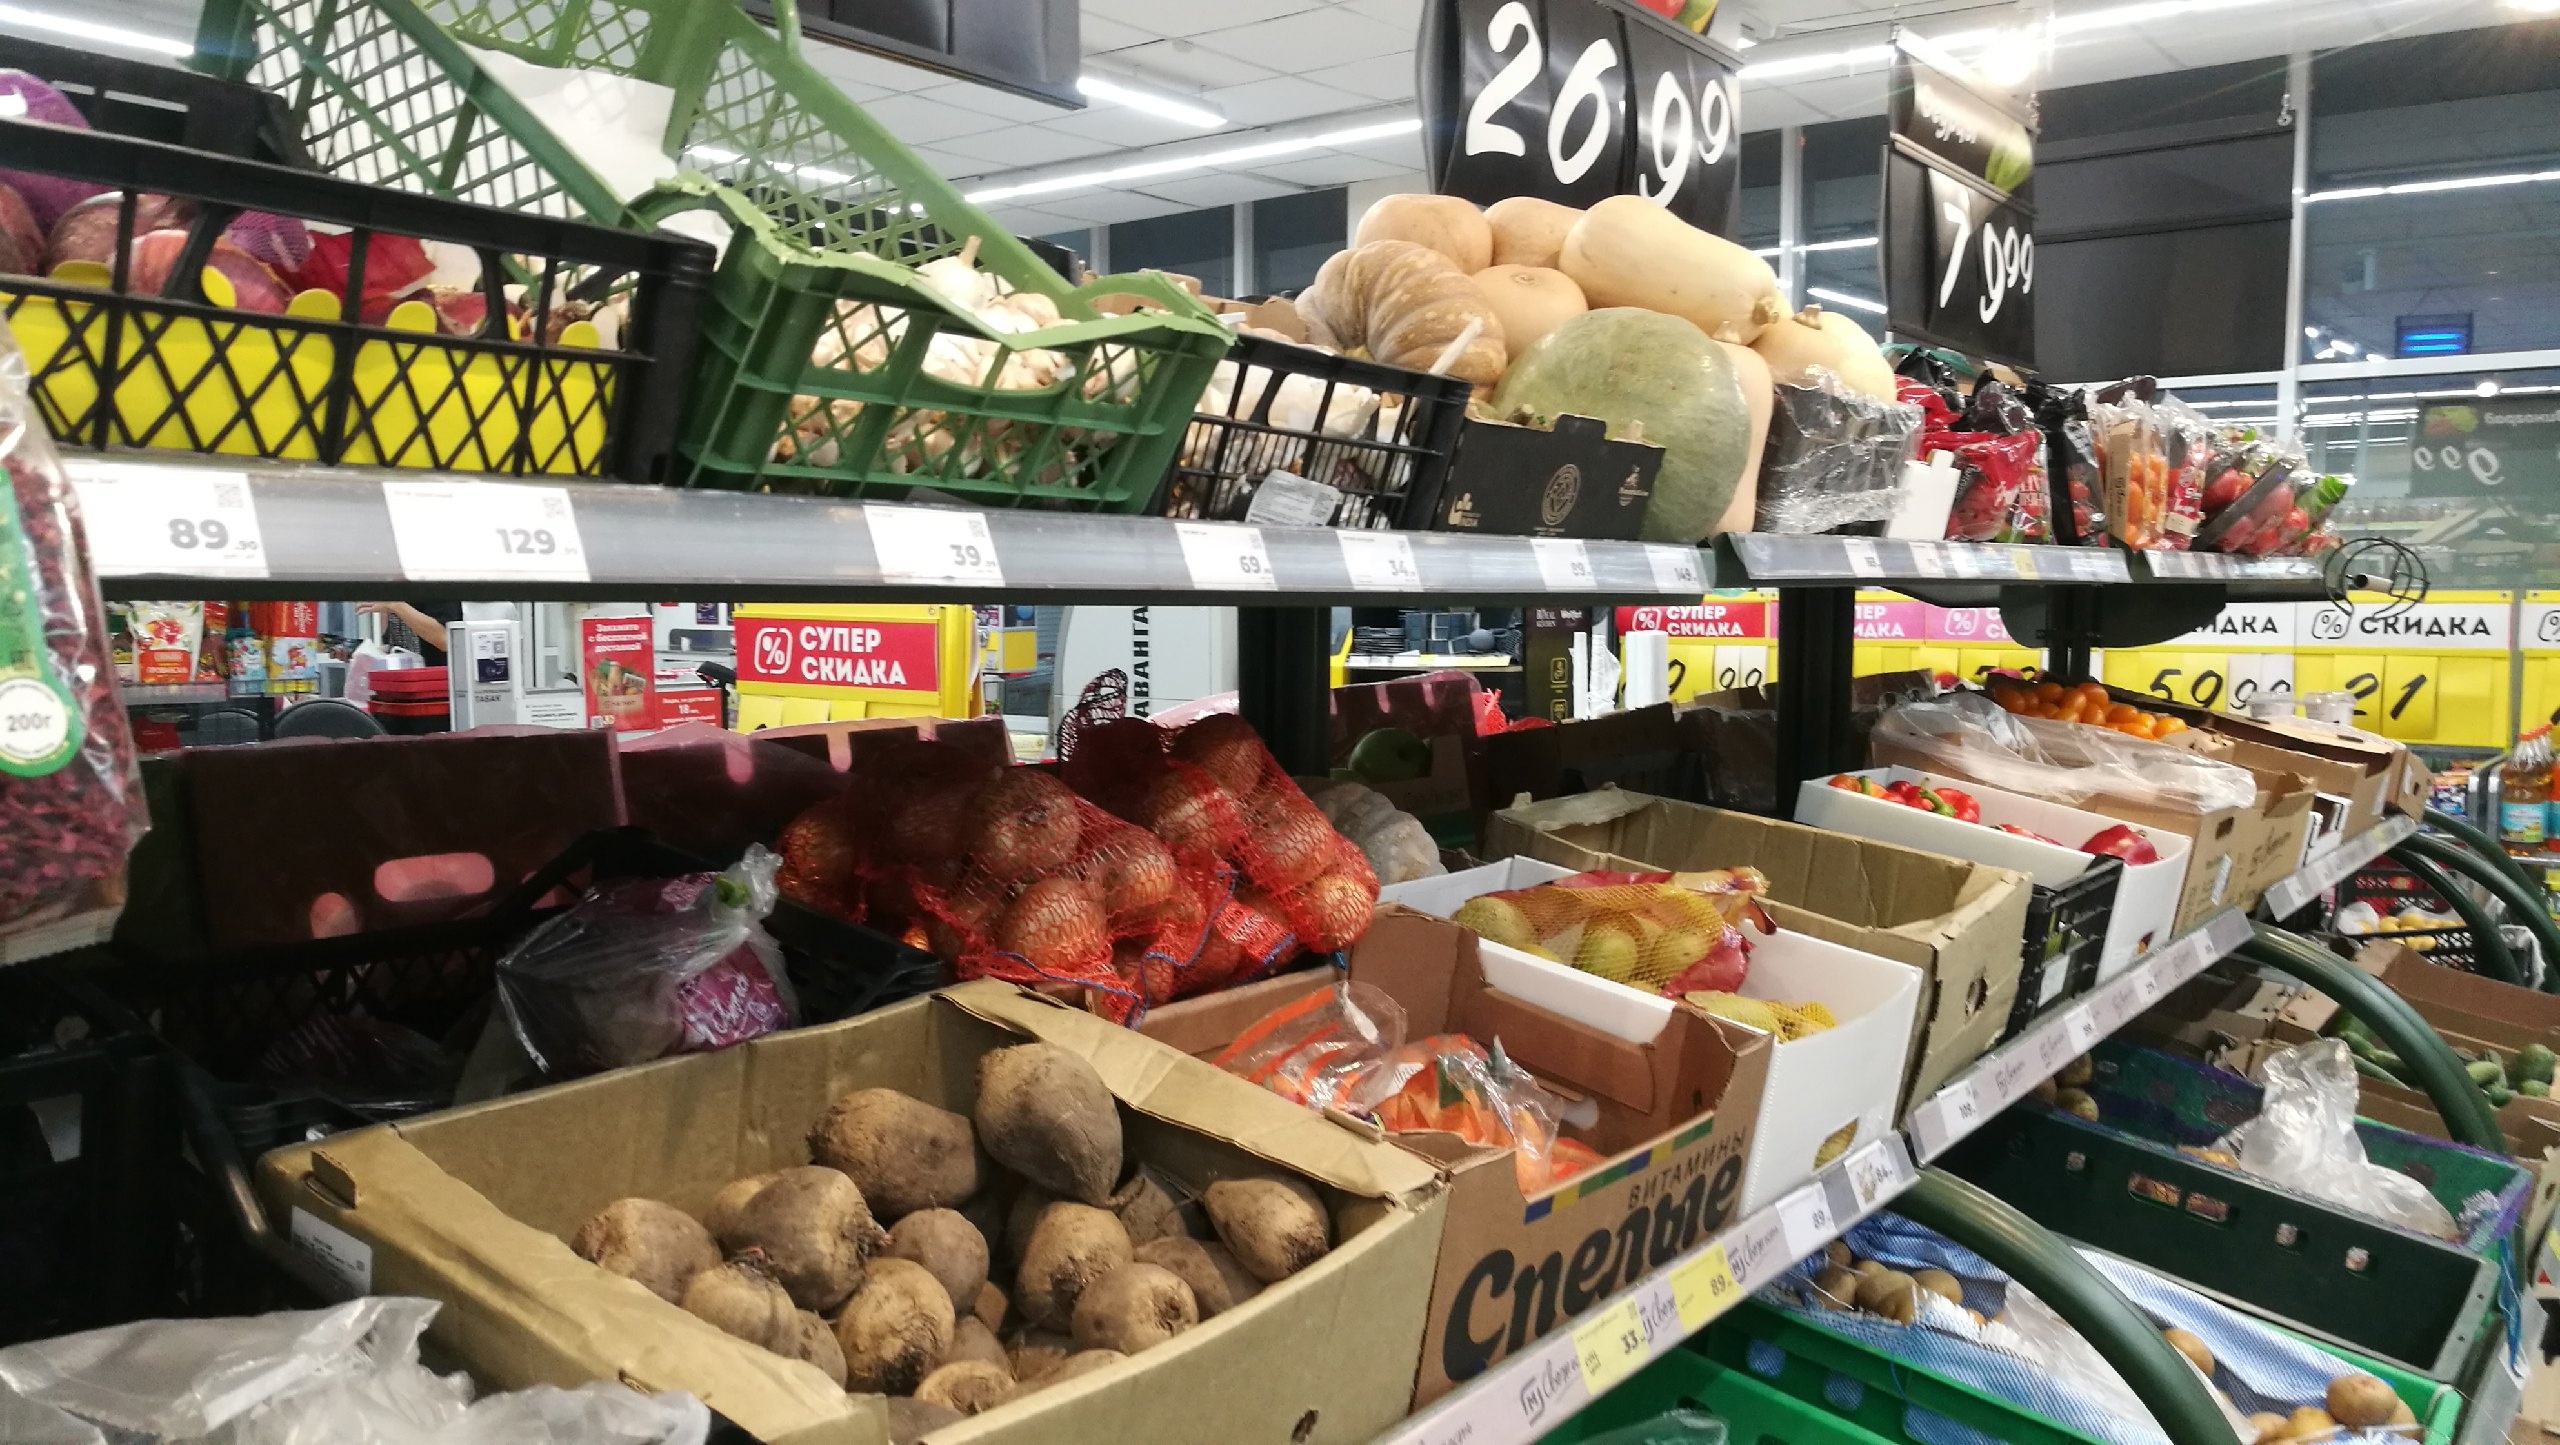 Ценовой апокалипсис: цены на базовые овощи растут безудержно - картошка уже прибавила 250%